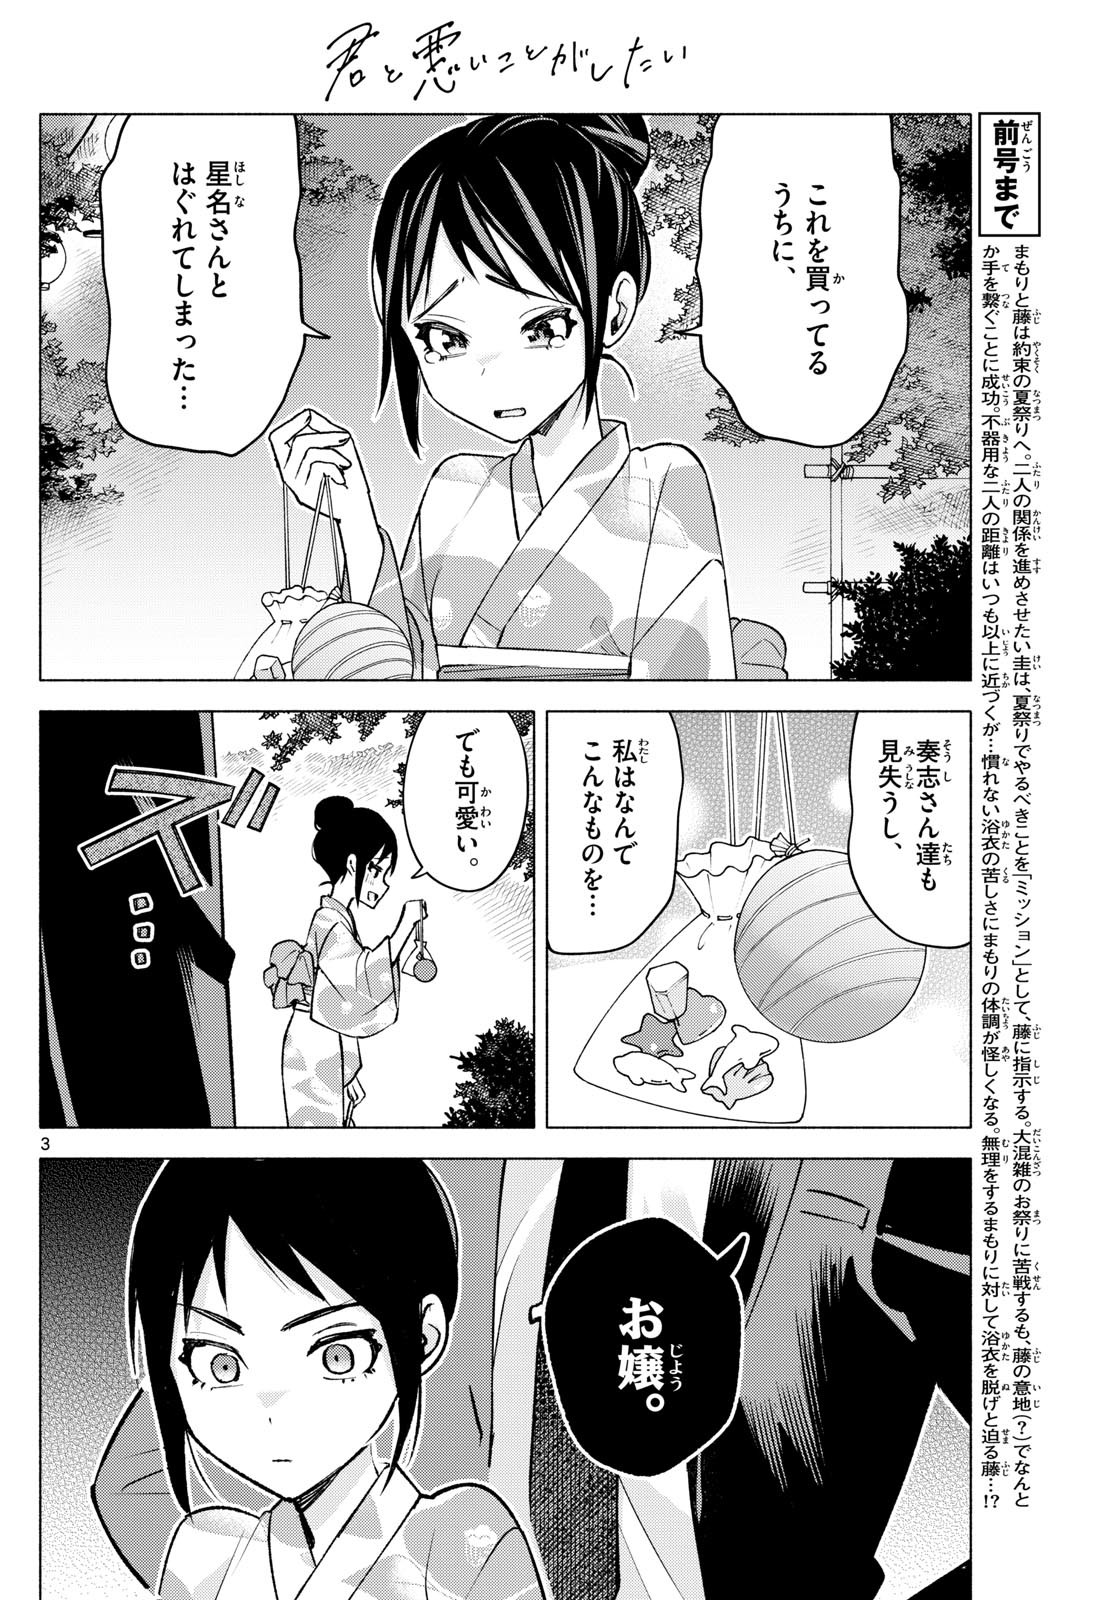 Kimi to Warui Koto ga Shitai - Chapter 048 - Page 3